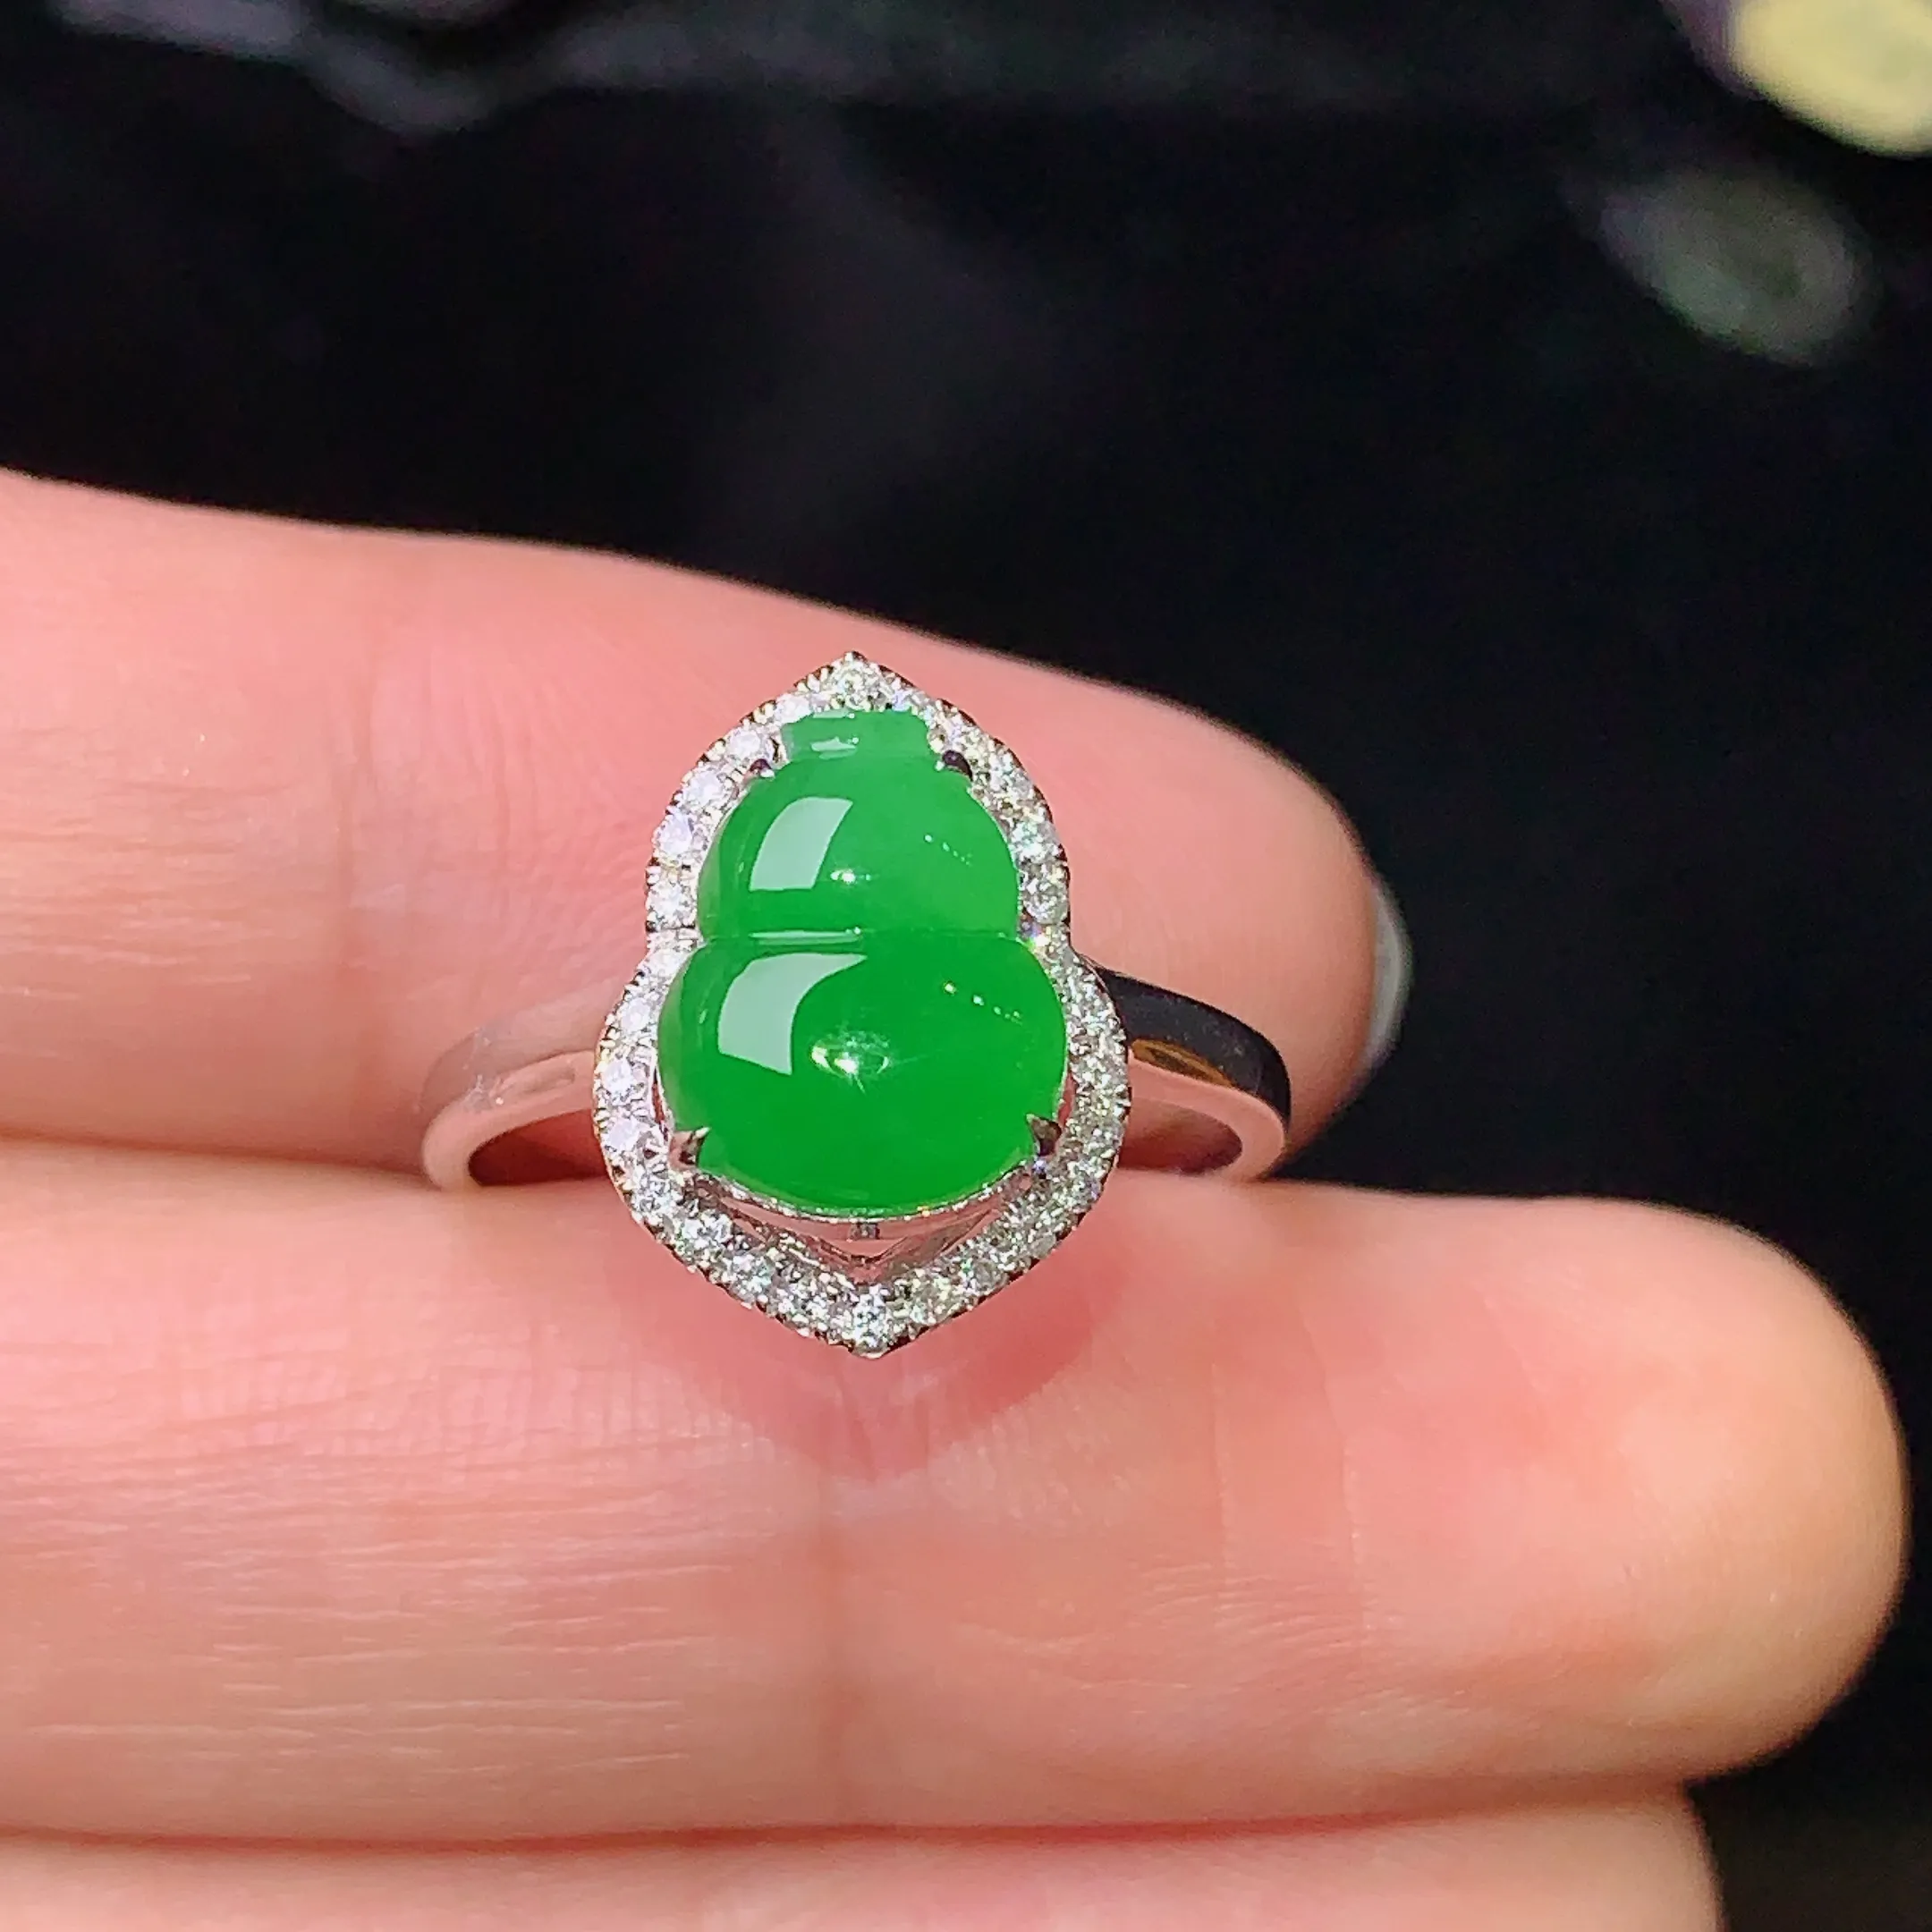 18k金钻镶嵌满绿葫芦戒指 玉质细腻 色泽艳丽 圈口13.5  整体尺寸14.1*10.4*7.3